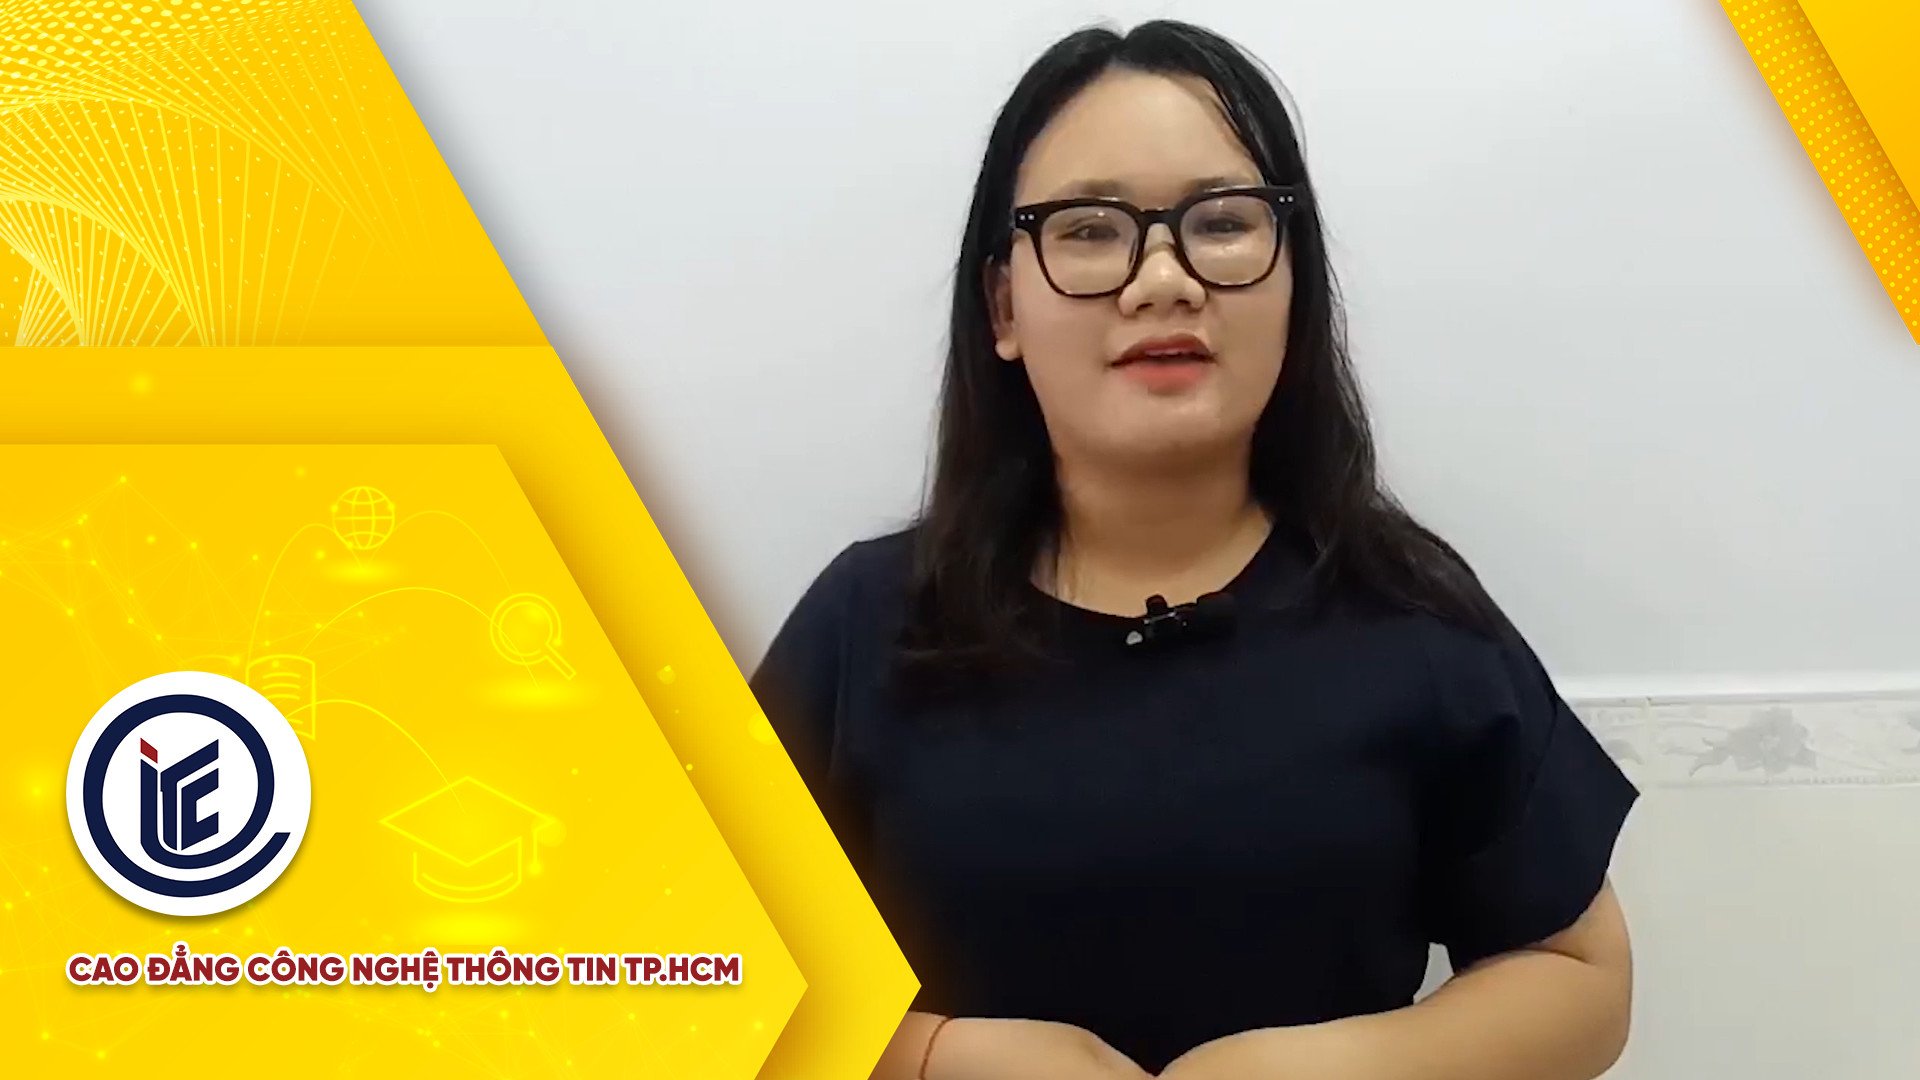 CV sinh viên Lê Ngọc Cẩm Giang - Giải nhất cuộc thi làm CV bằng video của Khoa Kinh tế ITC